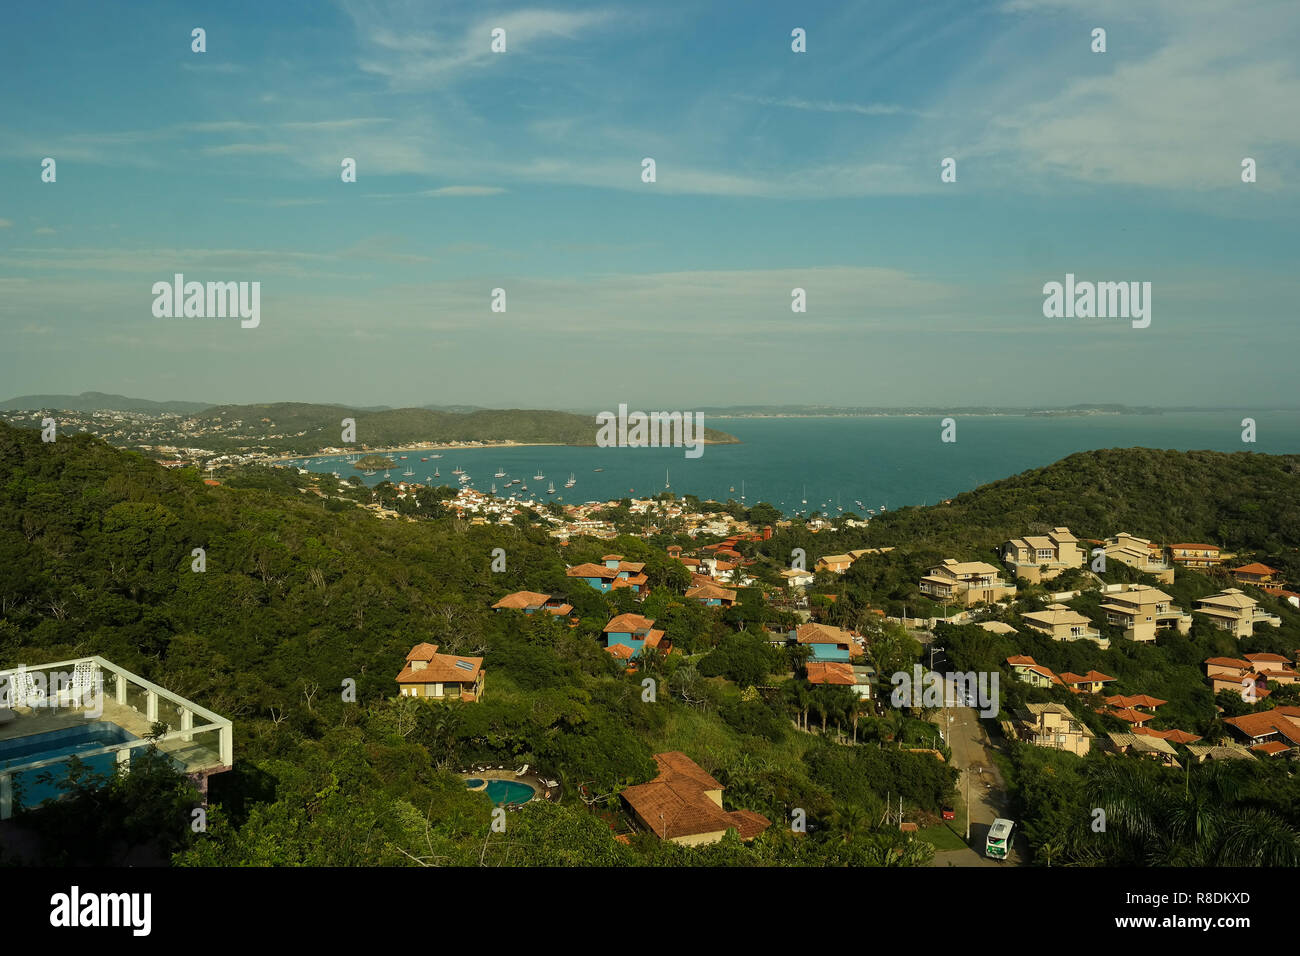 Landscape, beach and balneary - Praia e paisagem a beira mar Stock Photo